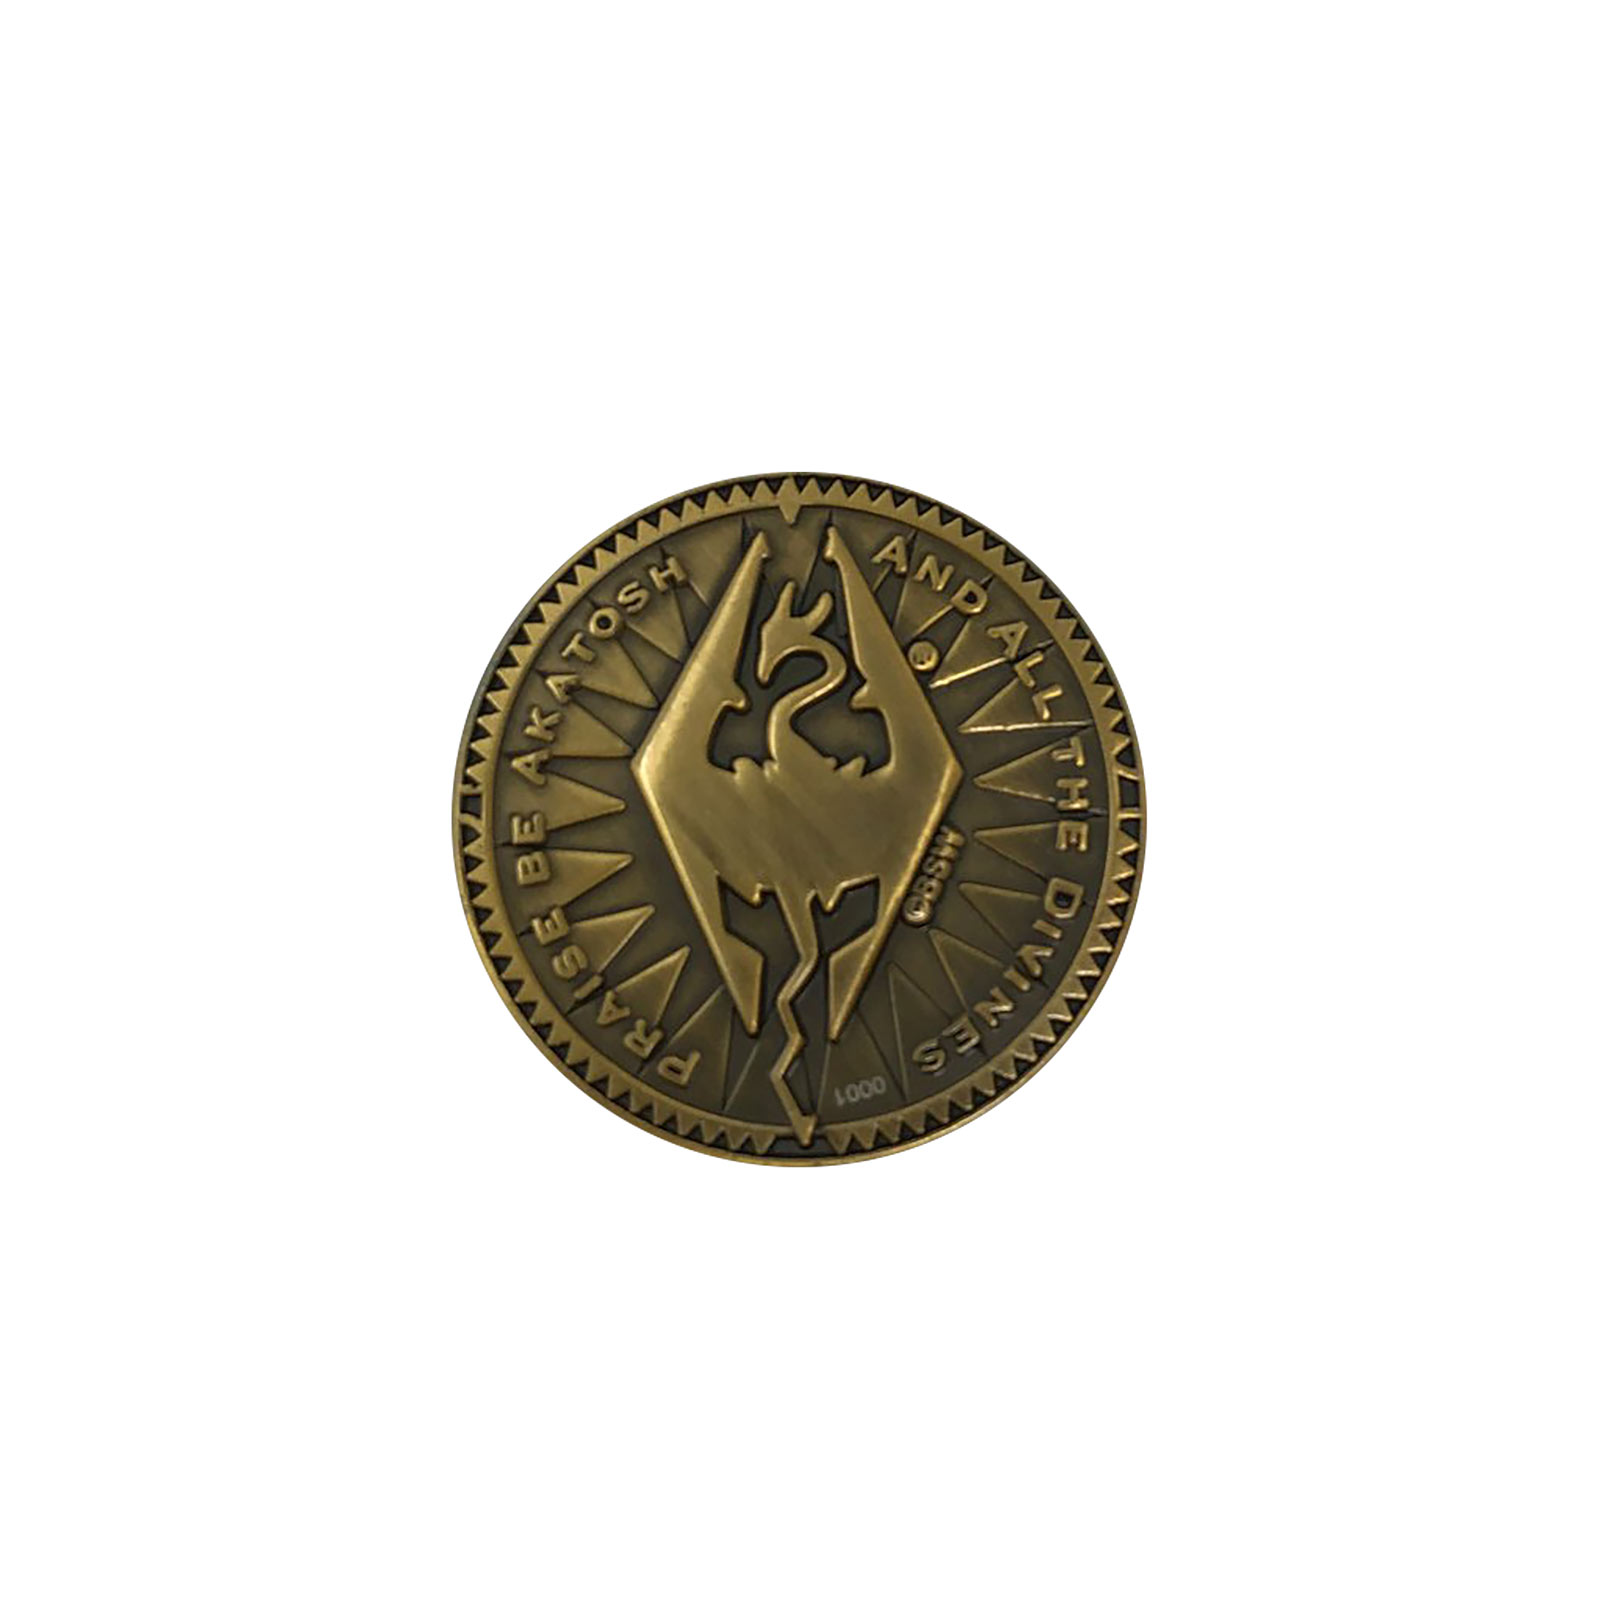 Skyrim - Septim Sammlermünze limitiert